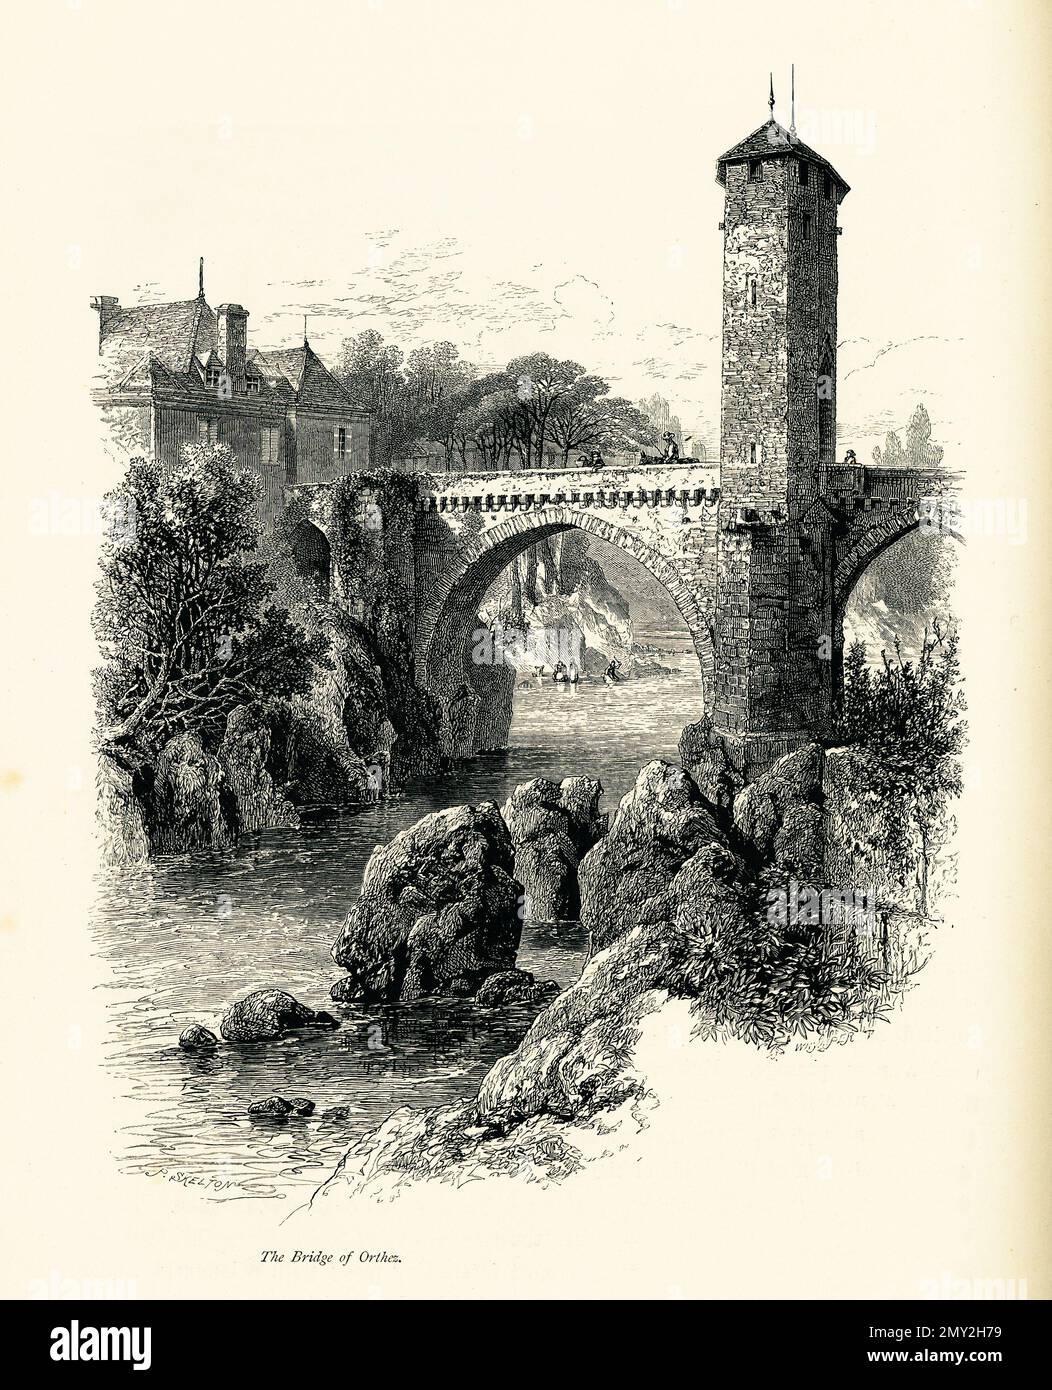 Incisione del 19th ° secolo del ponte sul Gave de Pau a Orthez, Francia. Illustrazione pubblicata in picturesque Europe, Vol. III (Cassell & Company Foto Stock